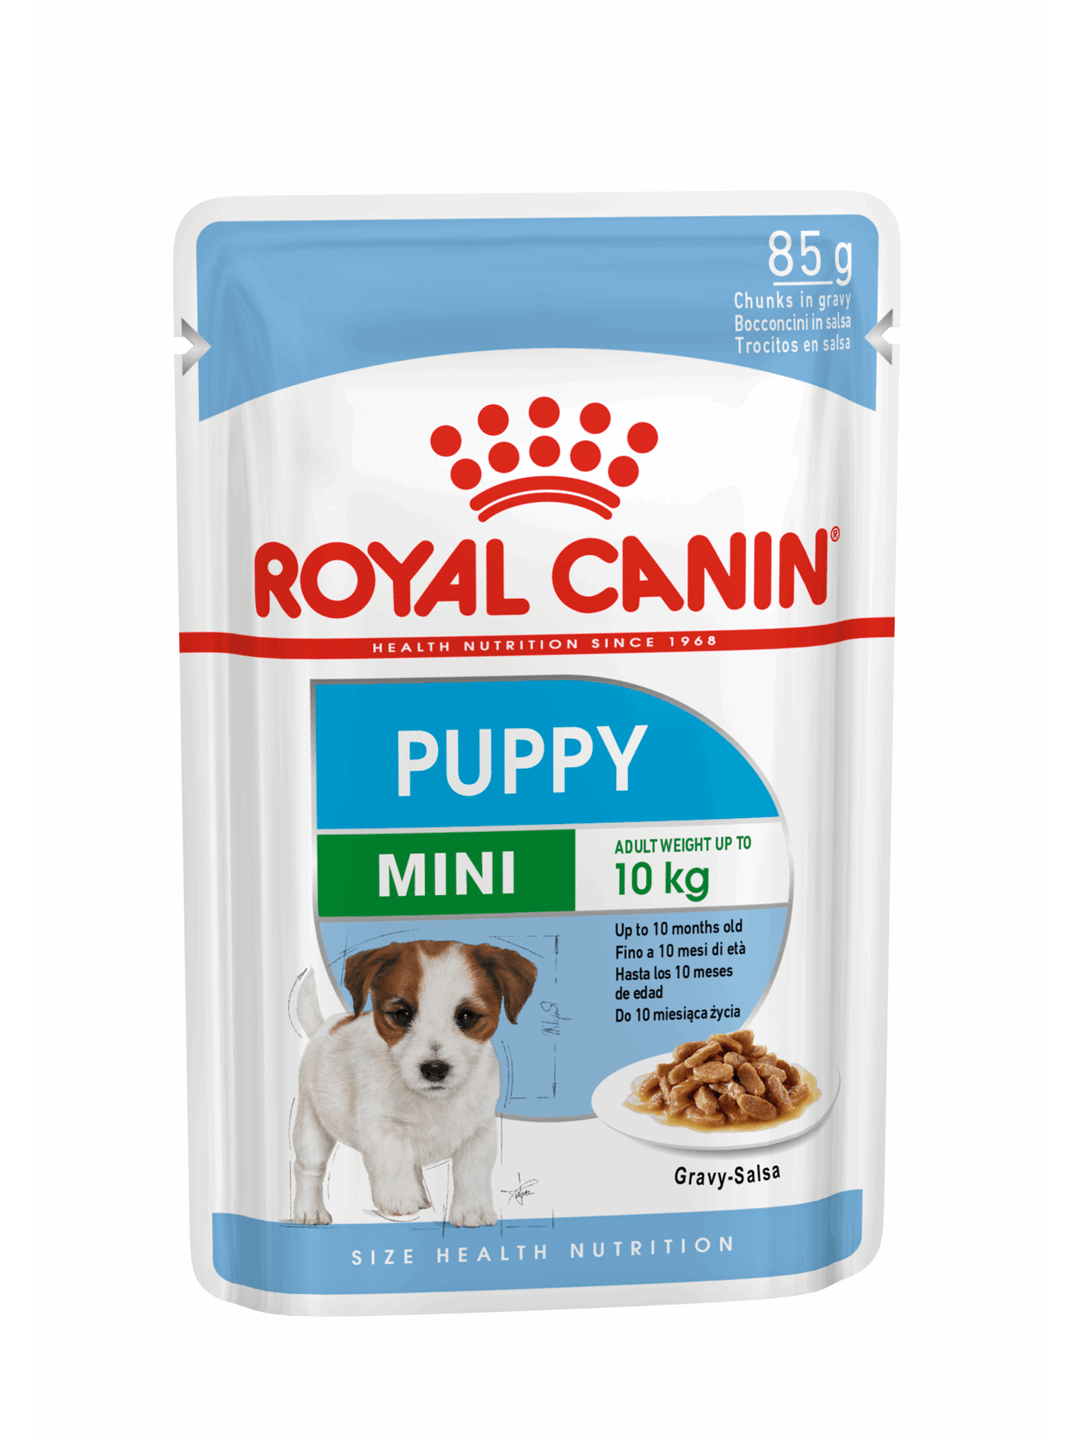 ΣΚΥΛΟΣ: Royal Canin Dog Mini Puppy 85g